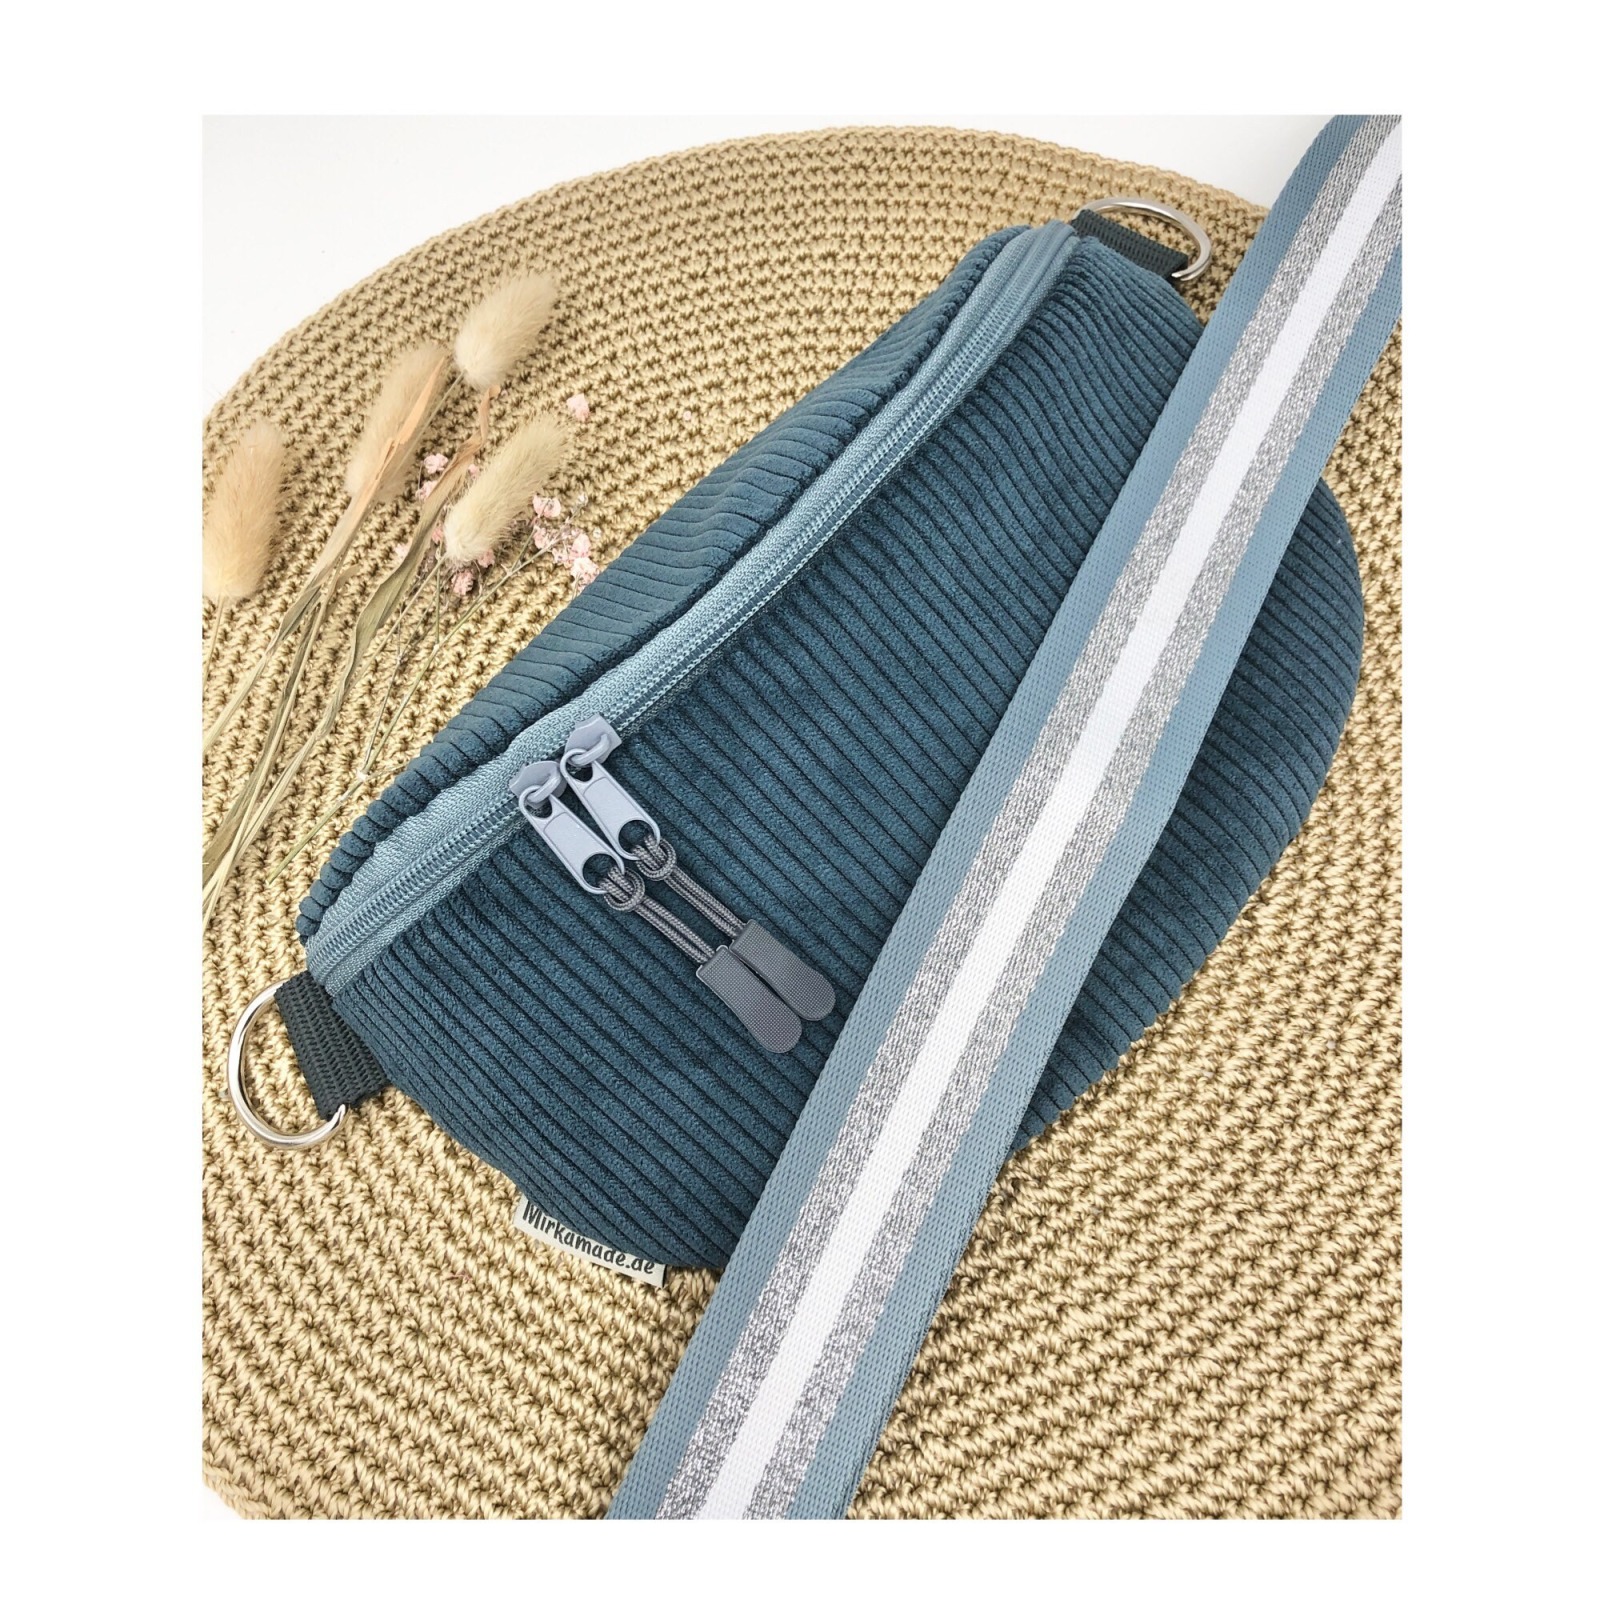 Bauchtasche Crossbag Cord blau petrol mit gestreiftem Taschengurt Tasche Cord blau Hipbag leicht und